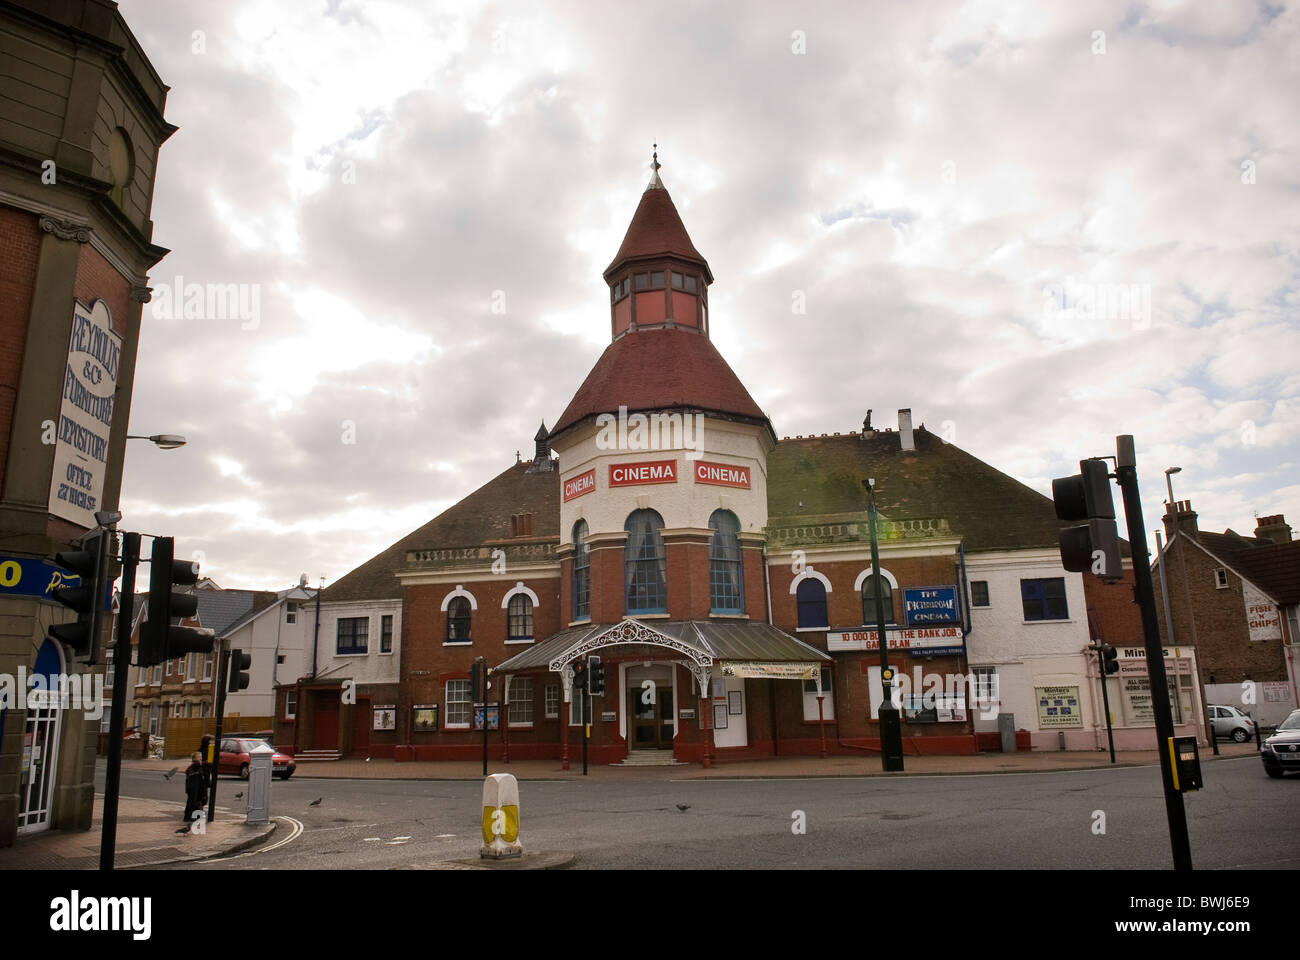 The Picturedrome Cinema, Bognor Regis, West Sussex, UK Stock Photo